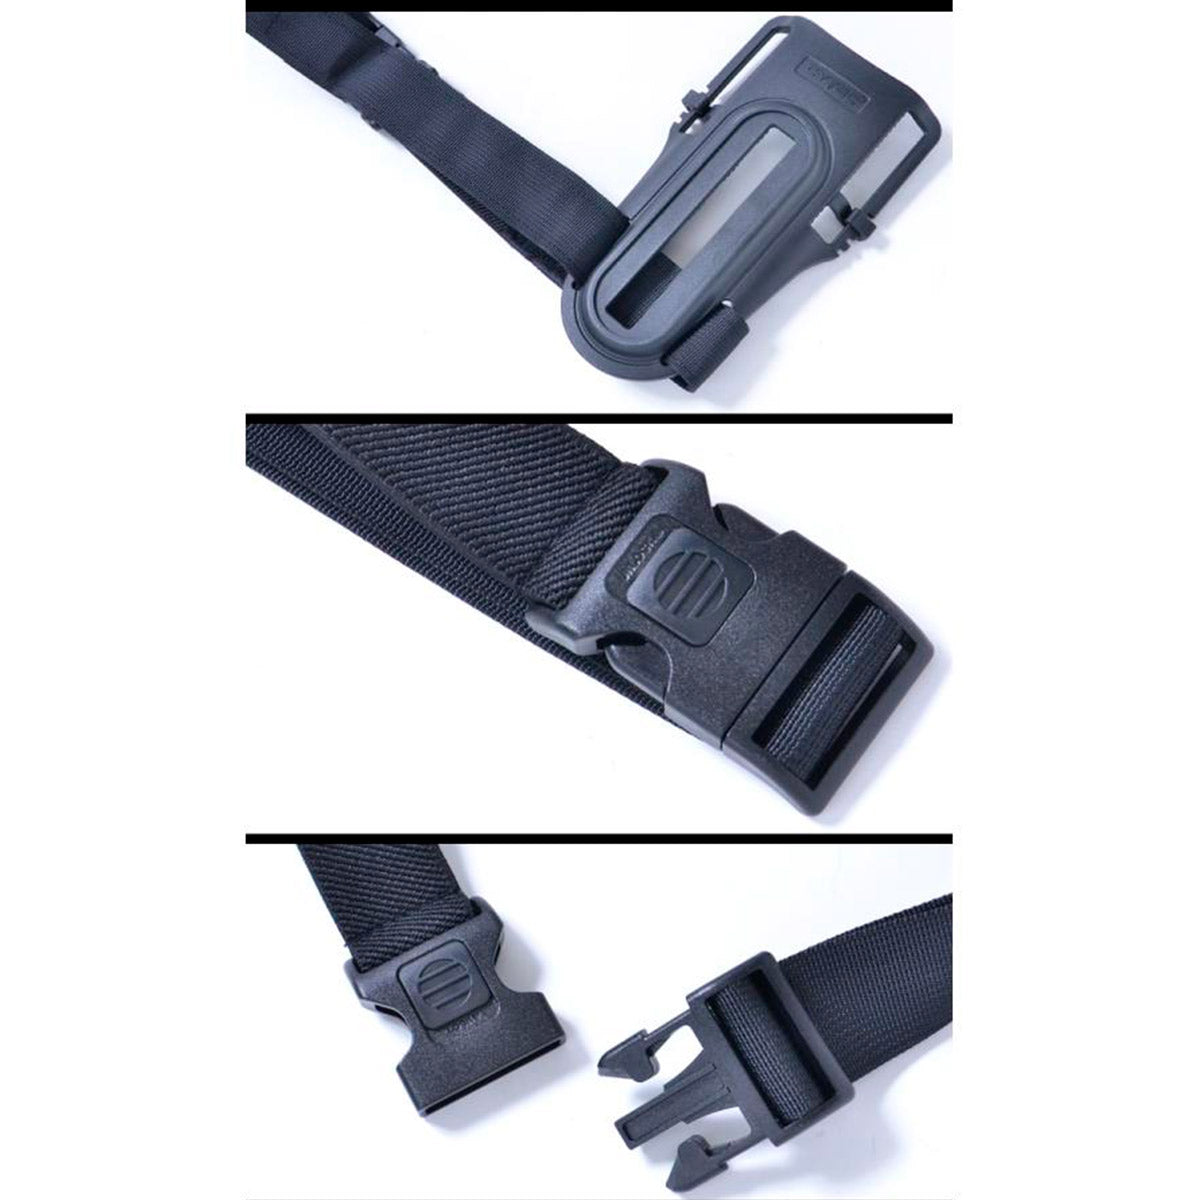 Plataforma de ajuste bajo para holster Plataforma de ajuste bajo piernera vista detallada de cinta de ajuste con broche de liberacion rapida